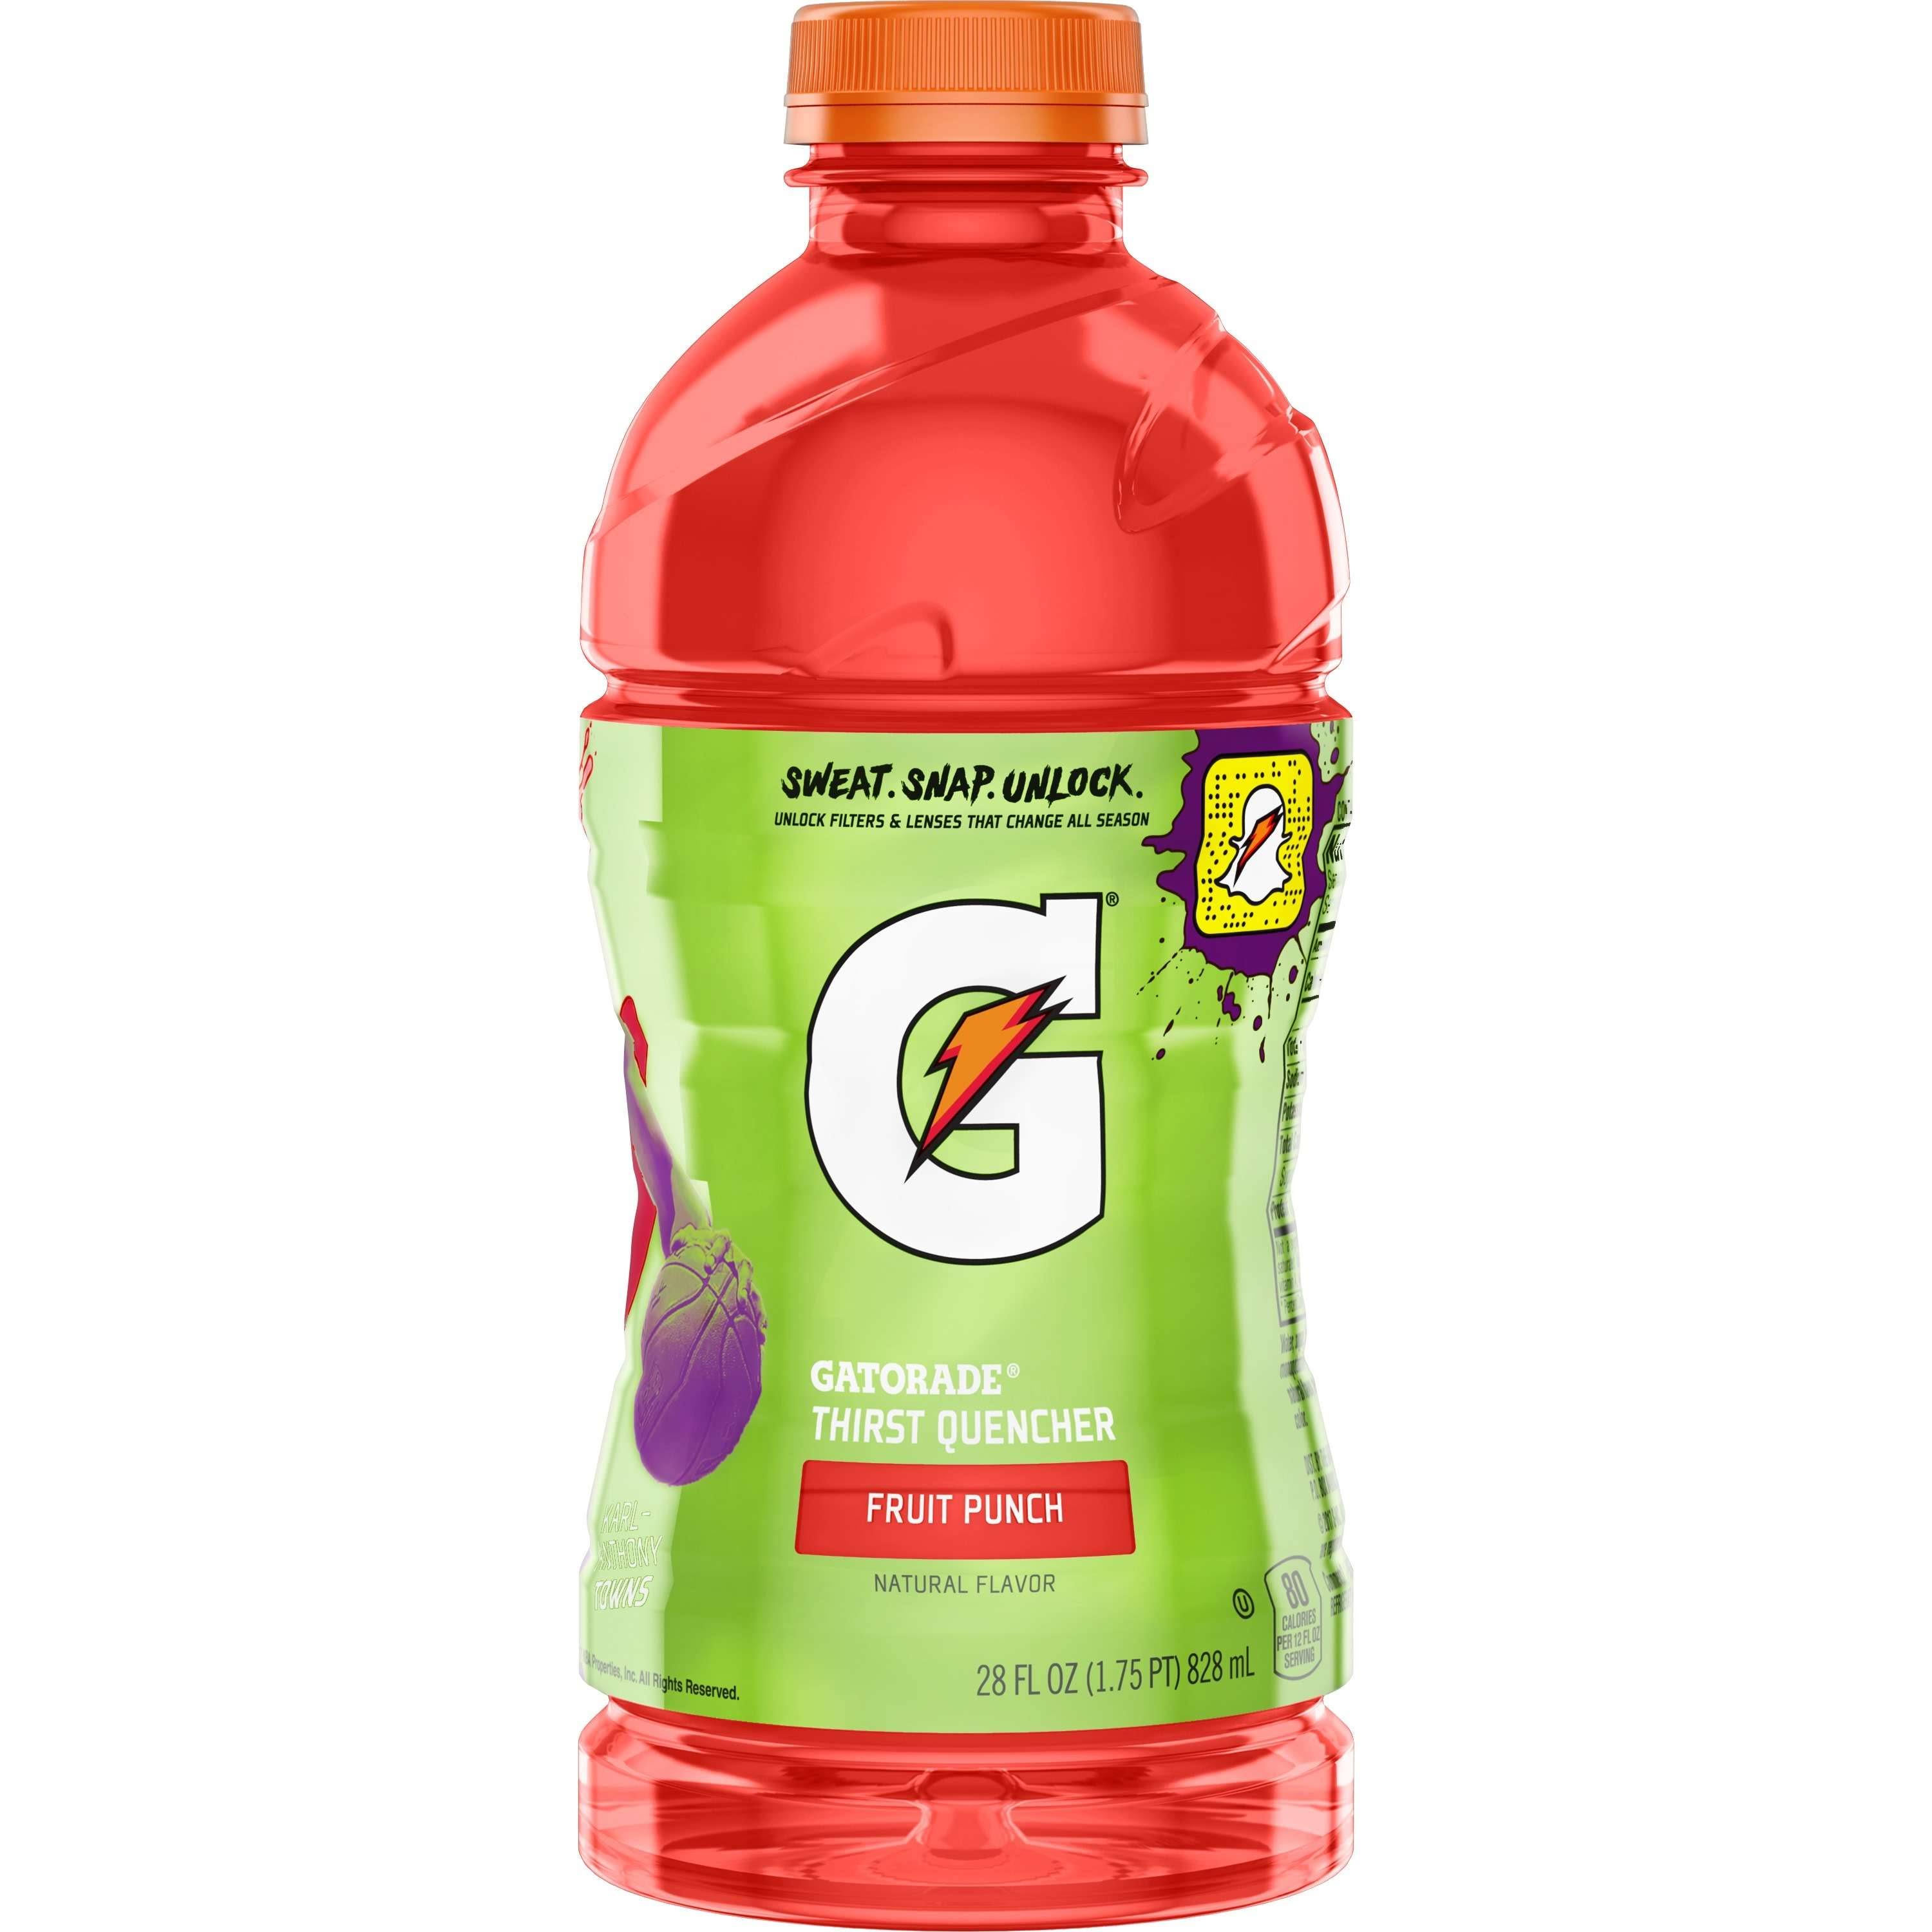 Gatorade G Series Thirst Quencher, Fruit Punch - 28 fl oz bottle